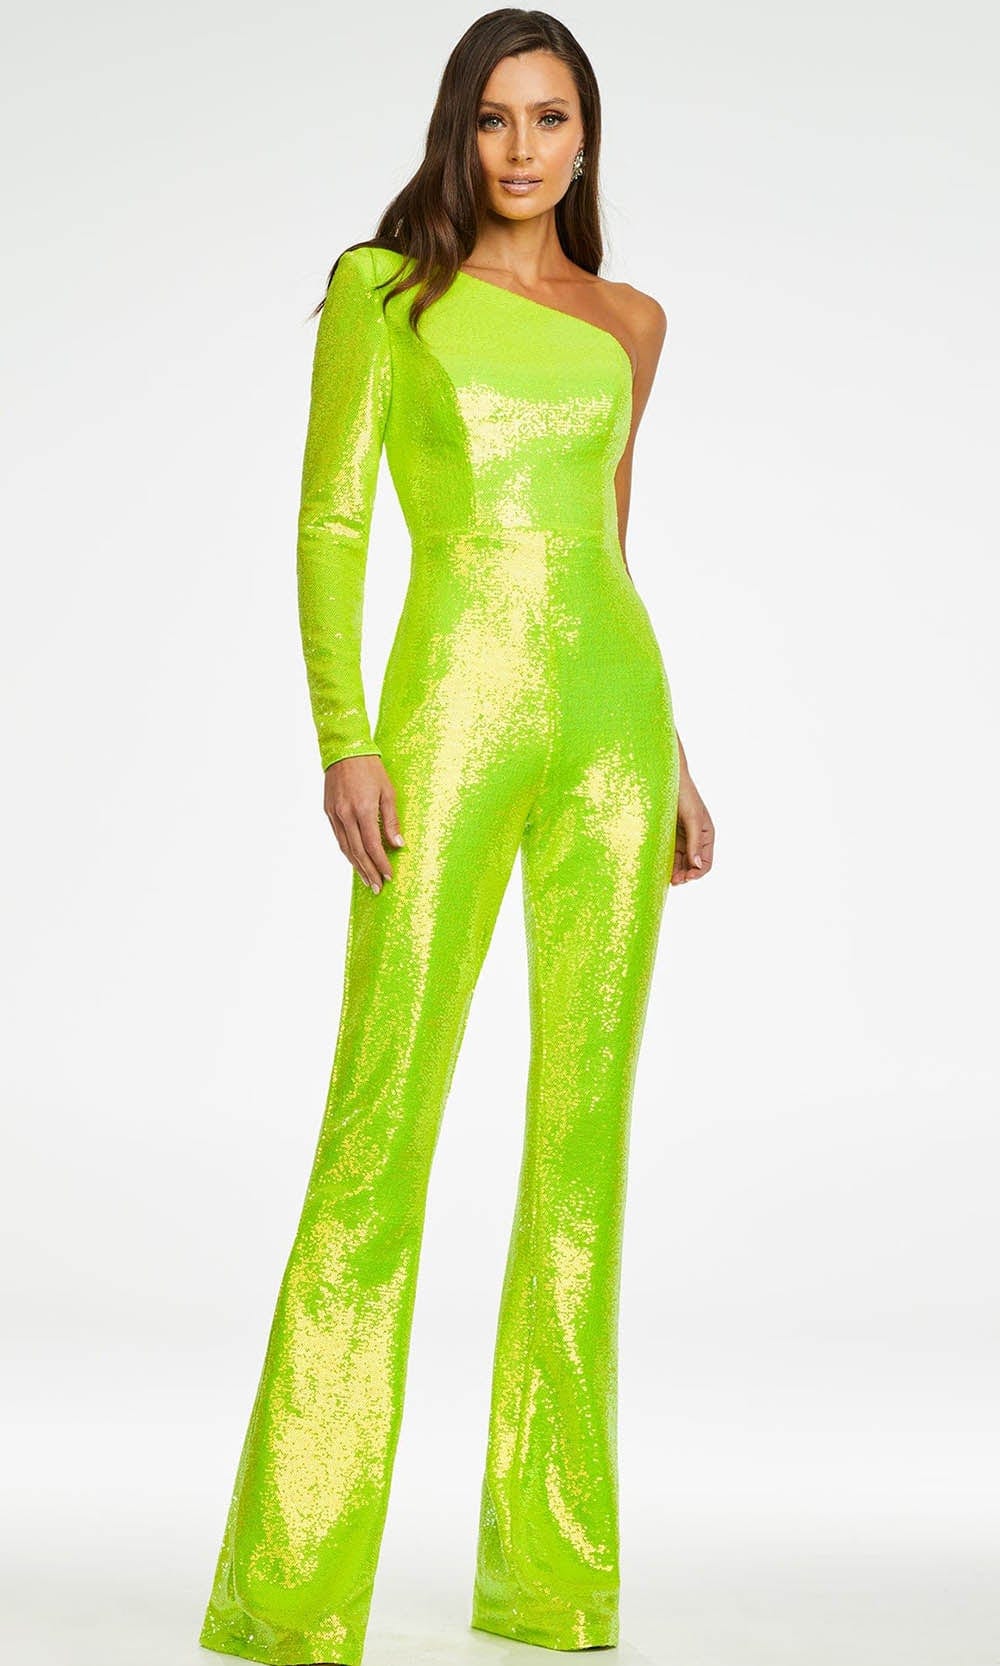 Ashley Lauren - 11110 One Shoulder Sequin Jumpsuit Evening Dresses 0 / Neon Green